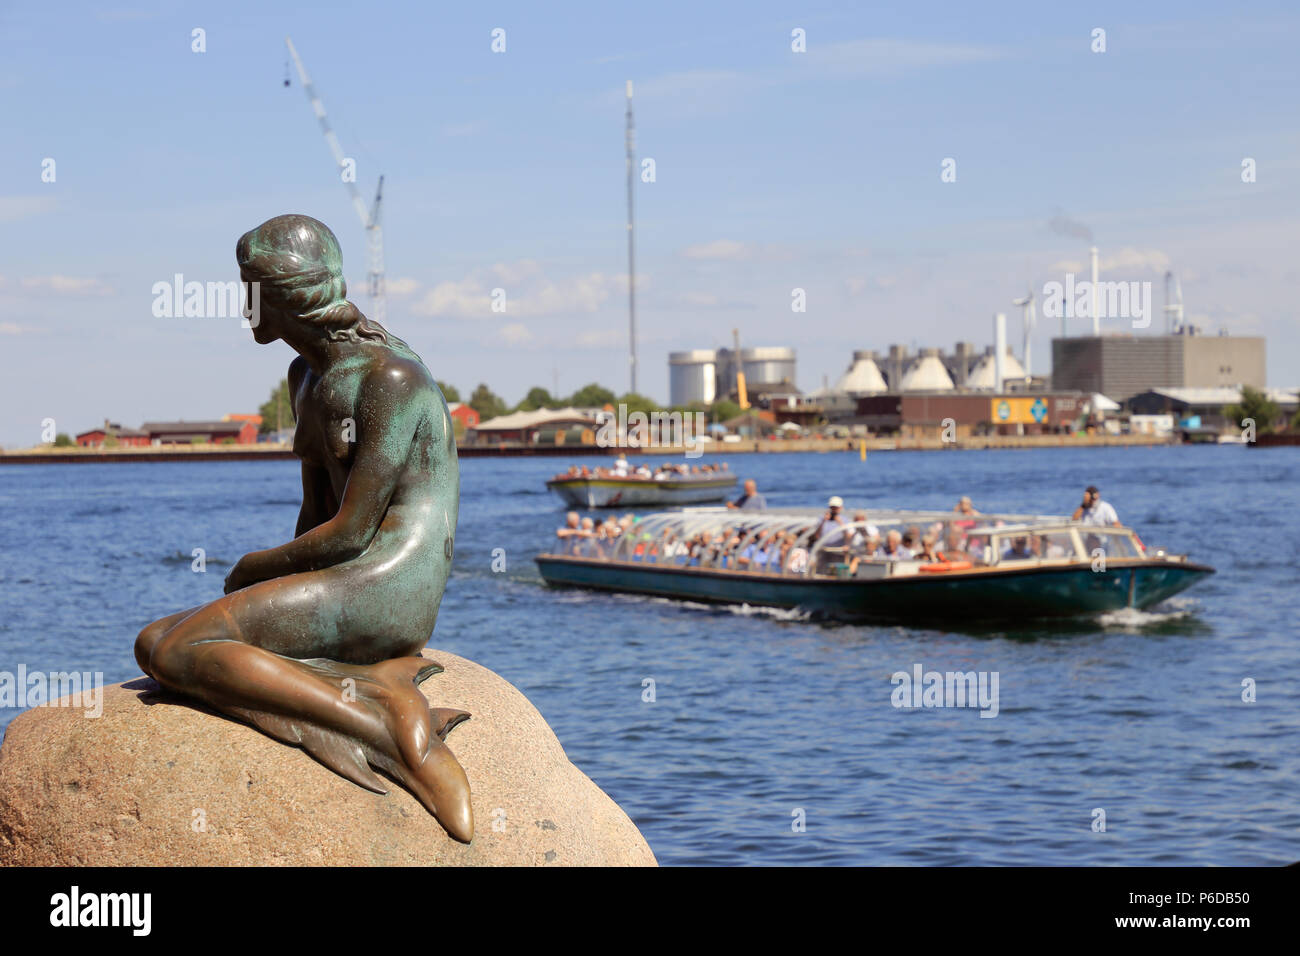 Copenhagen, Denmark - June 27, 2018: The statue of the Little Mermaid ...